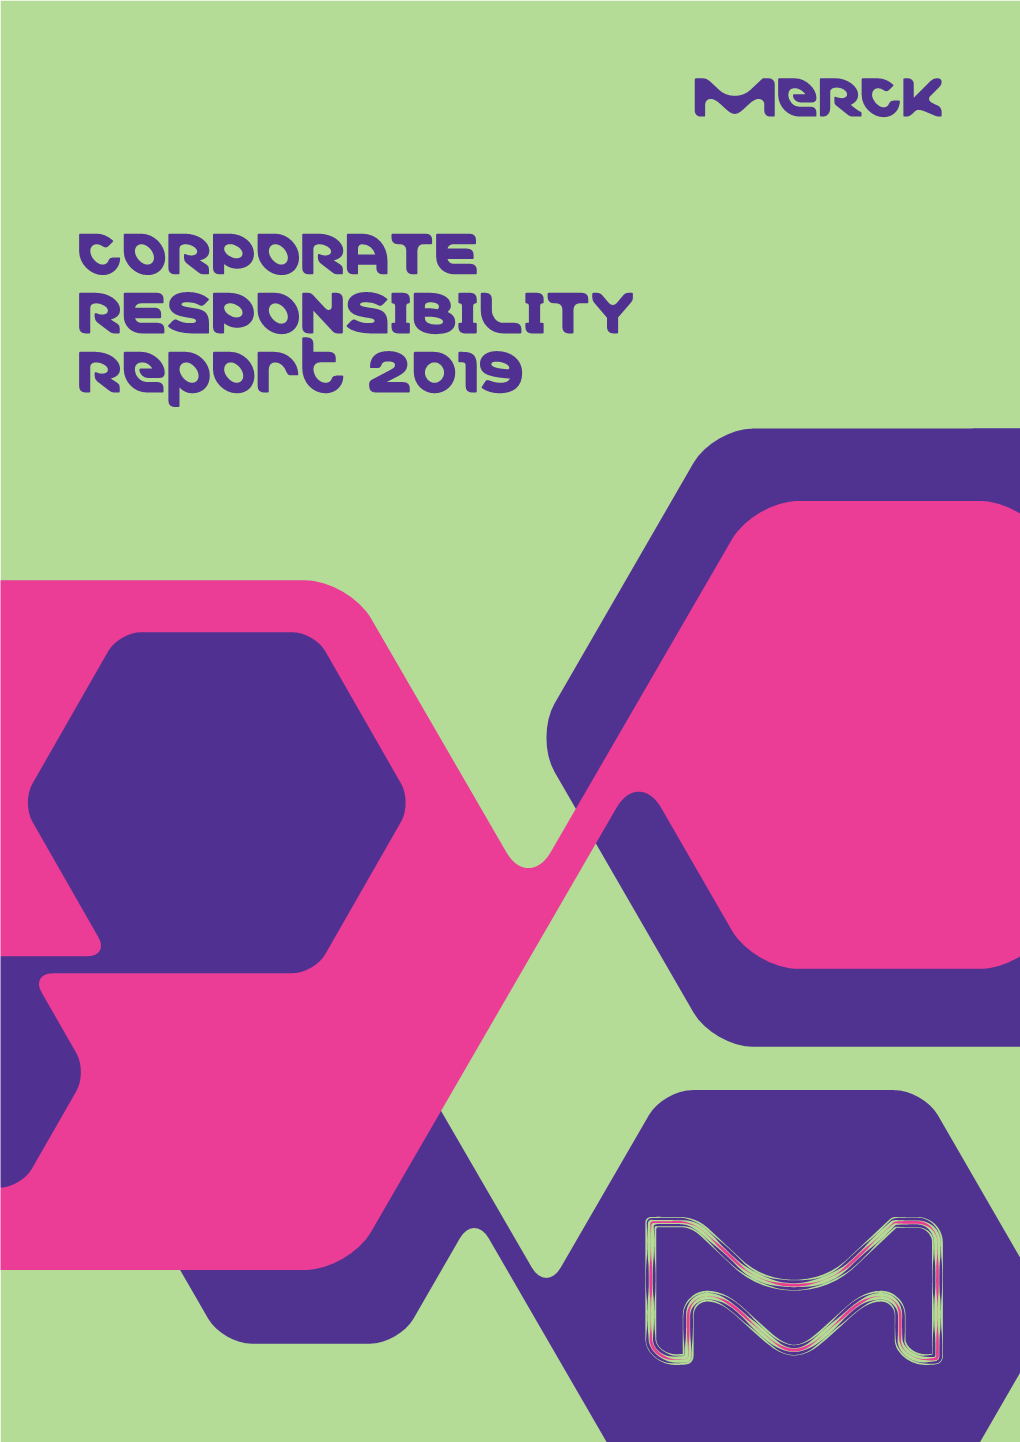 CORPORATE RESPONSIBILITY Report 2019 Merck Corporate Responsibility Report 2019